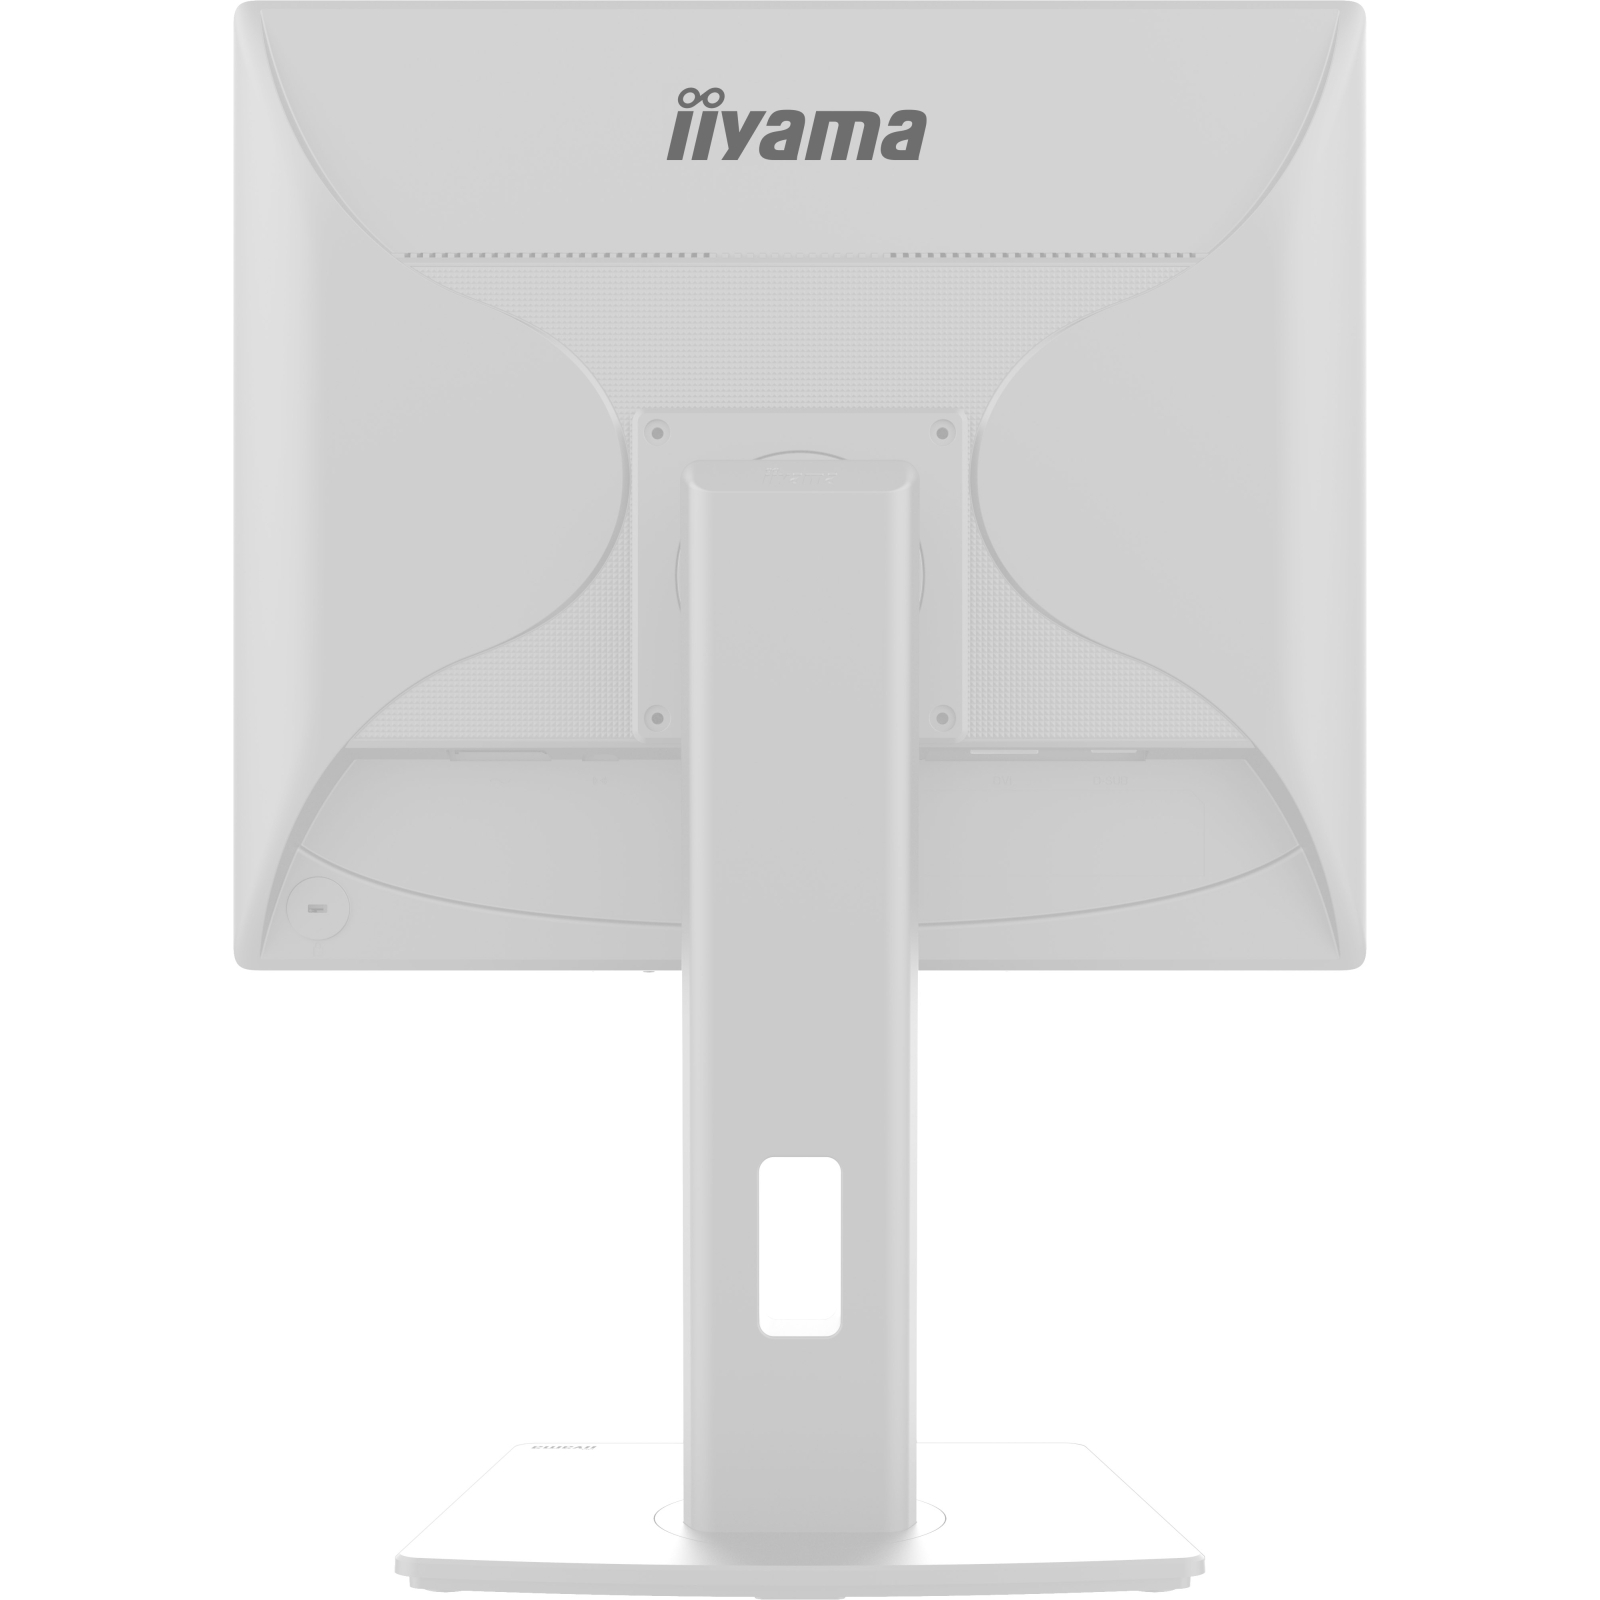 Монитор iiyama B1980D-W5 изображение 10